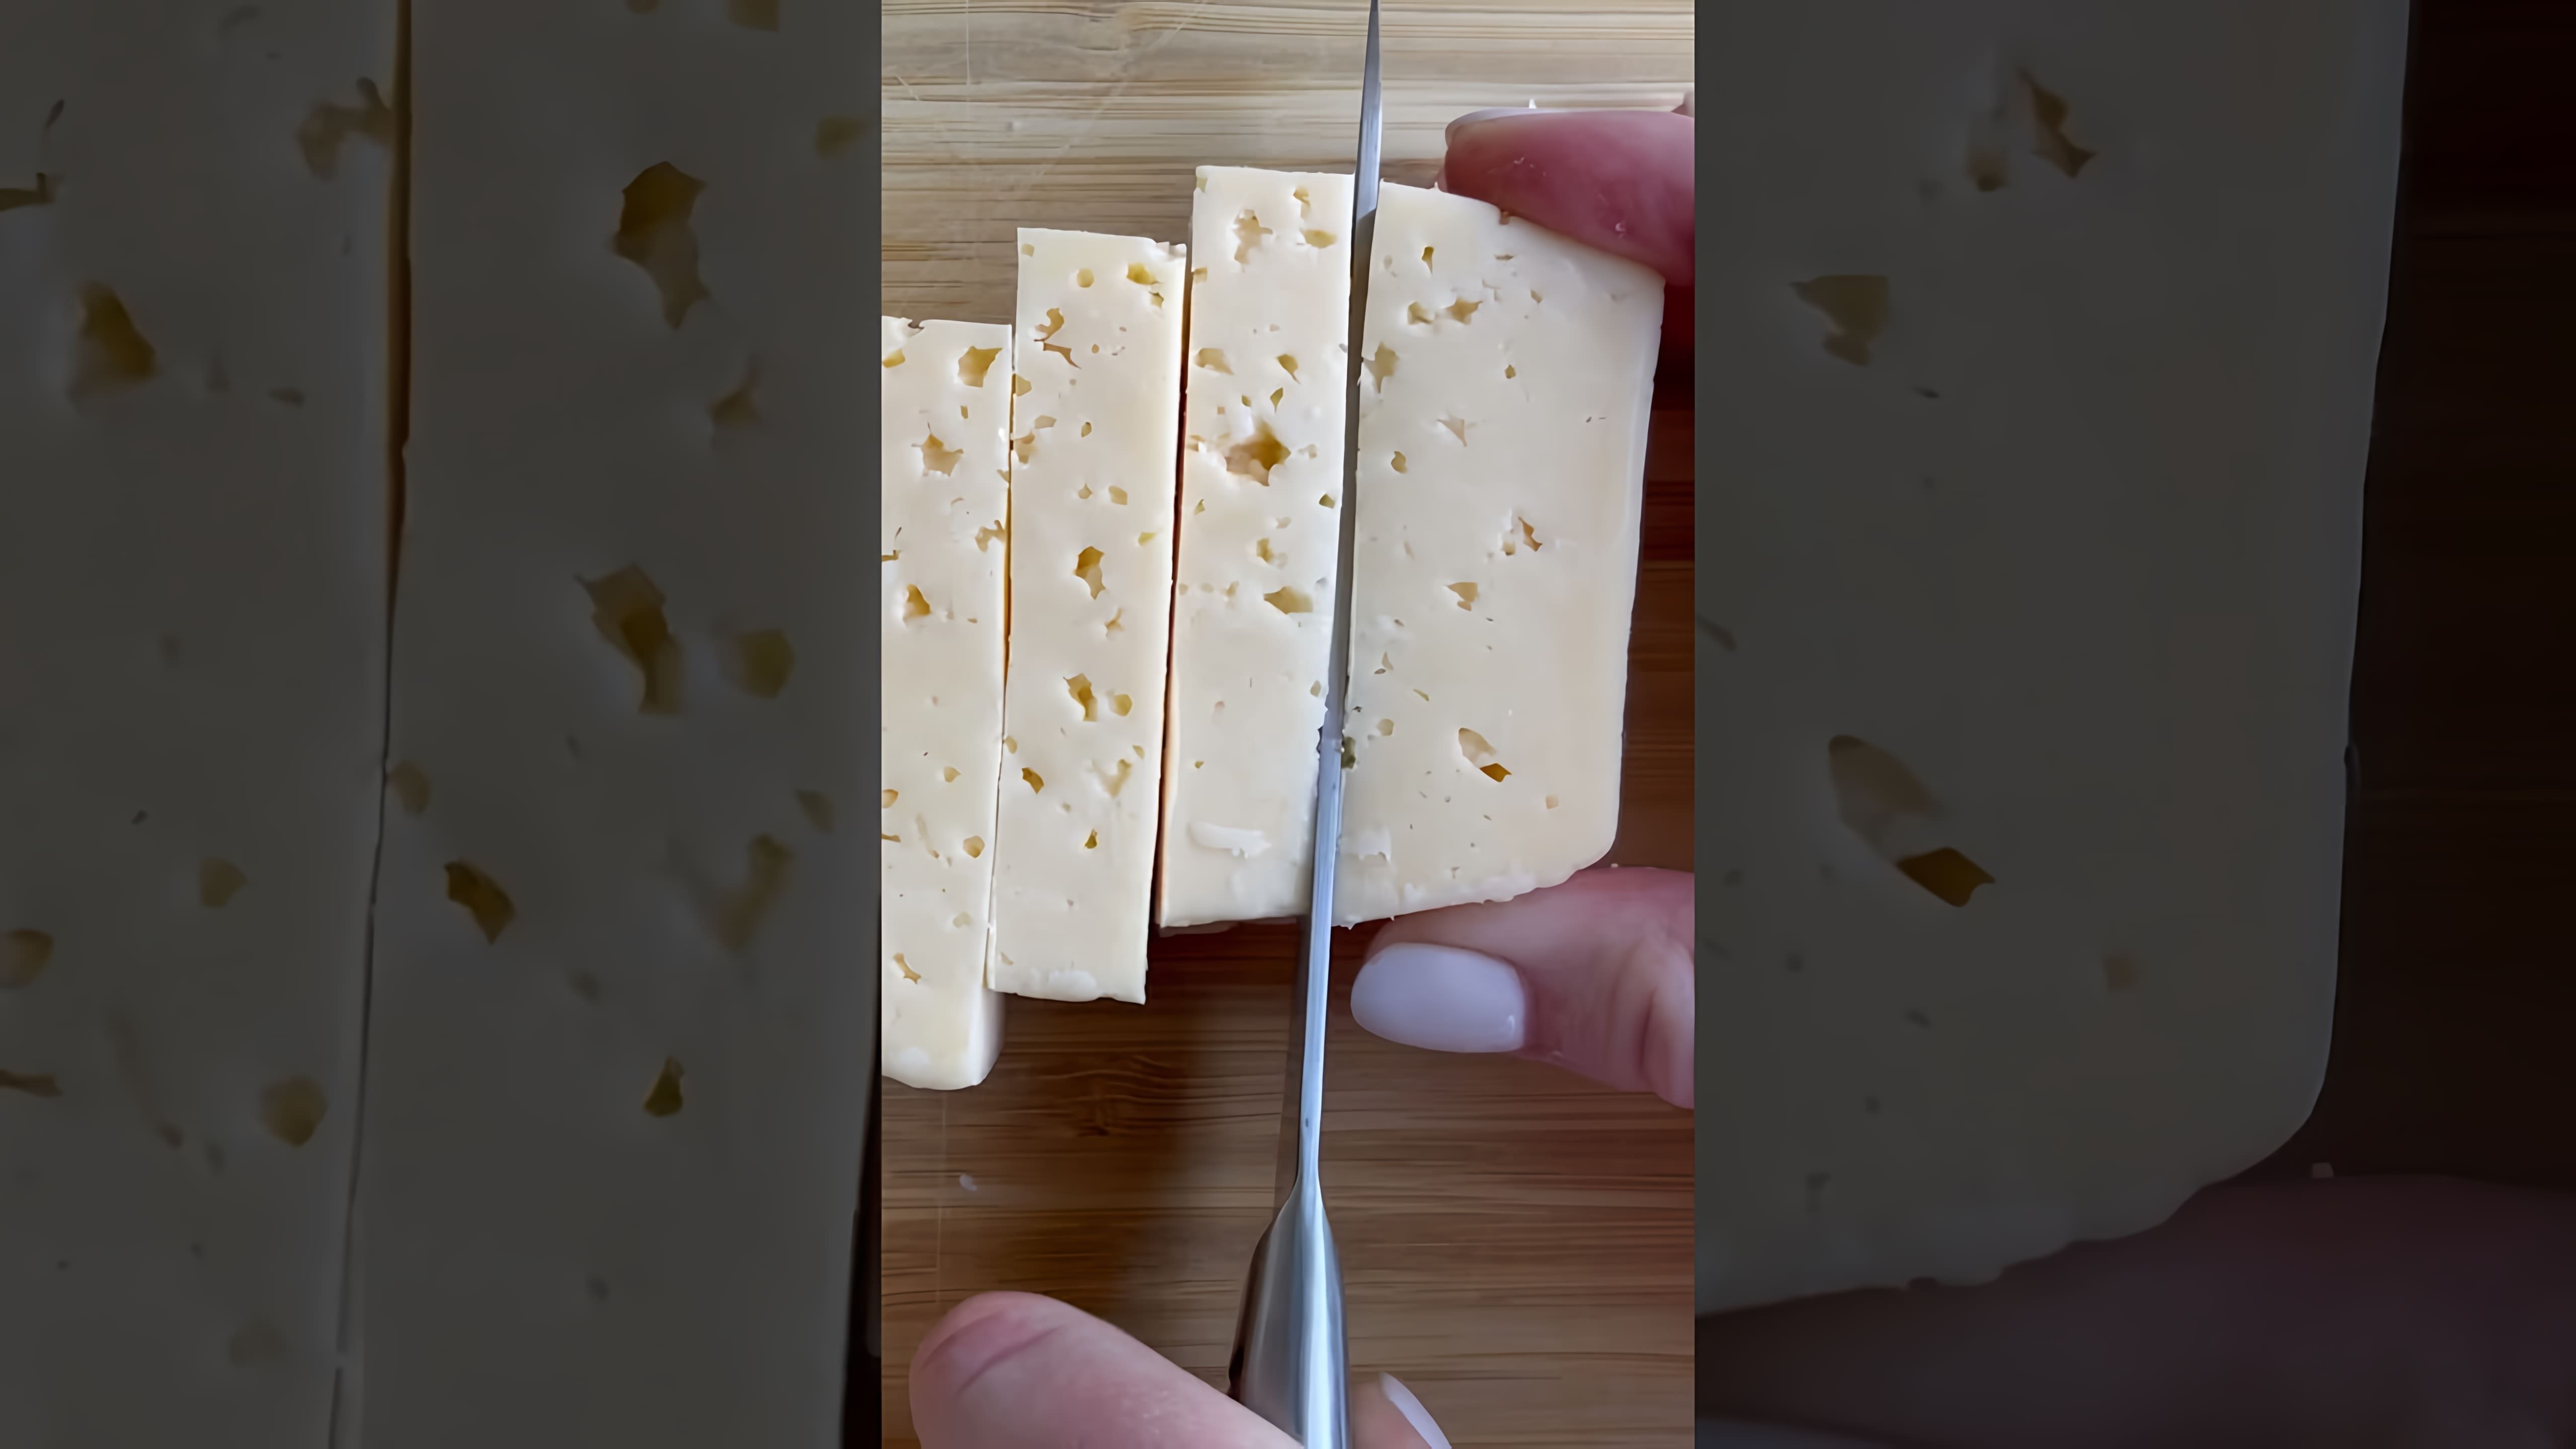 В этом видео демонстрируется процесс приготовления сырных палочек дома